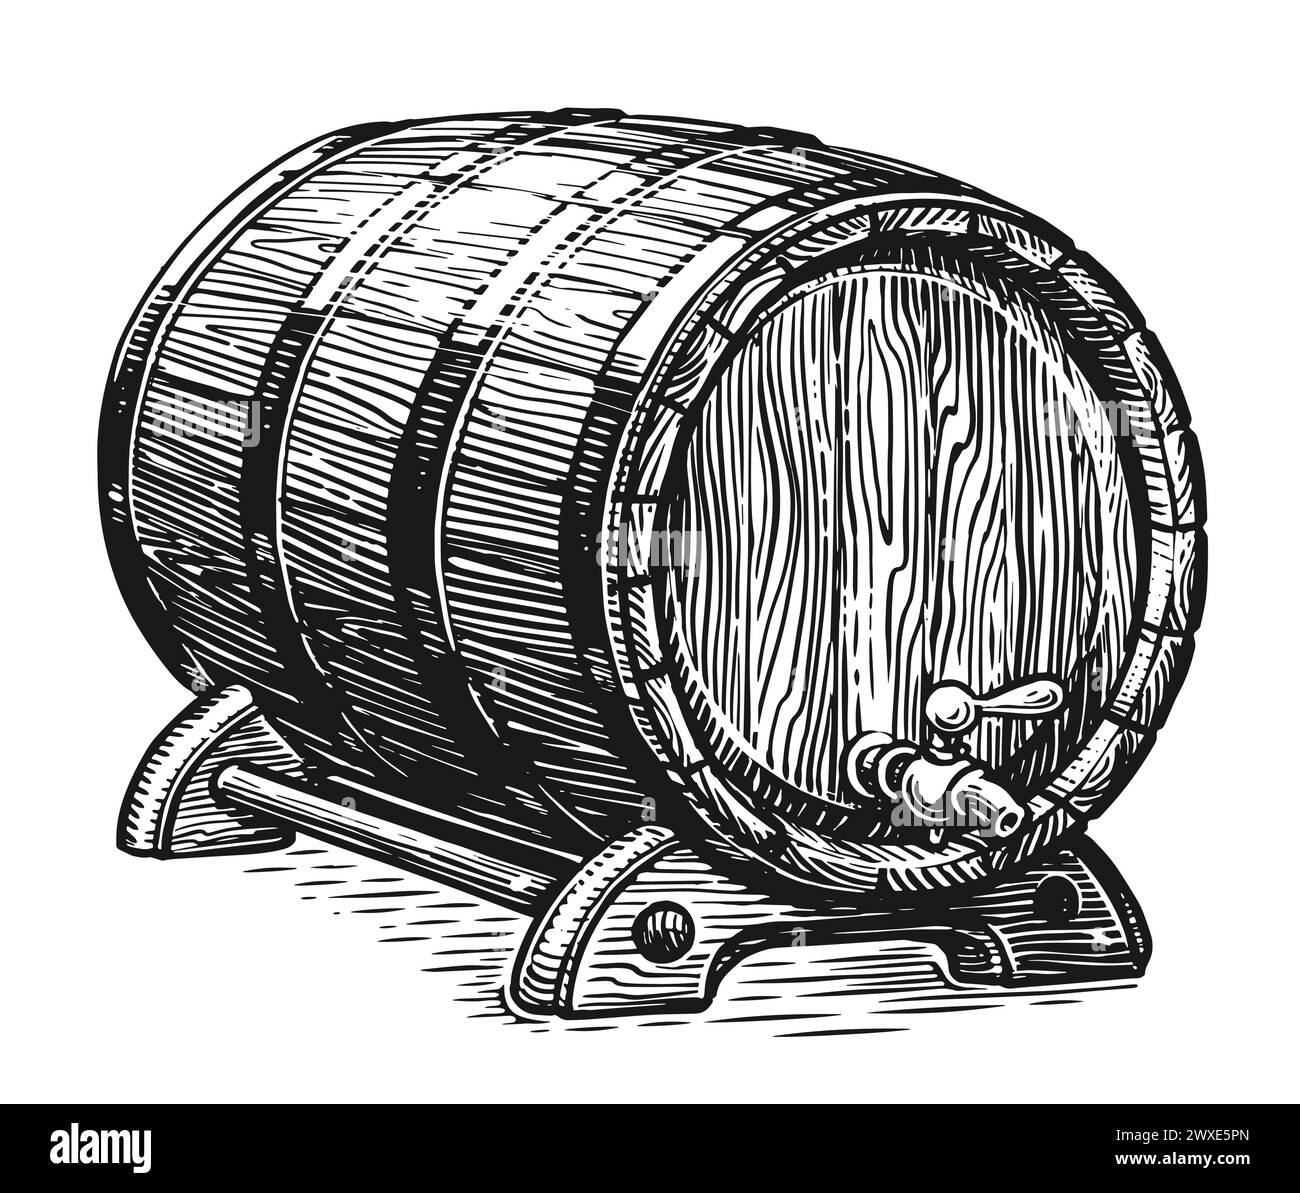 Tonneau en bois avec robinet pour le vin, la bière ou le whisky. Esquisse dessinée à la main style de gravure d'illustration vintage Illustration de Vecteur